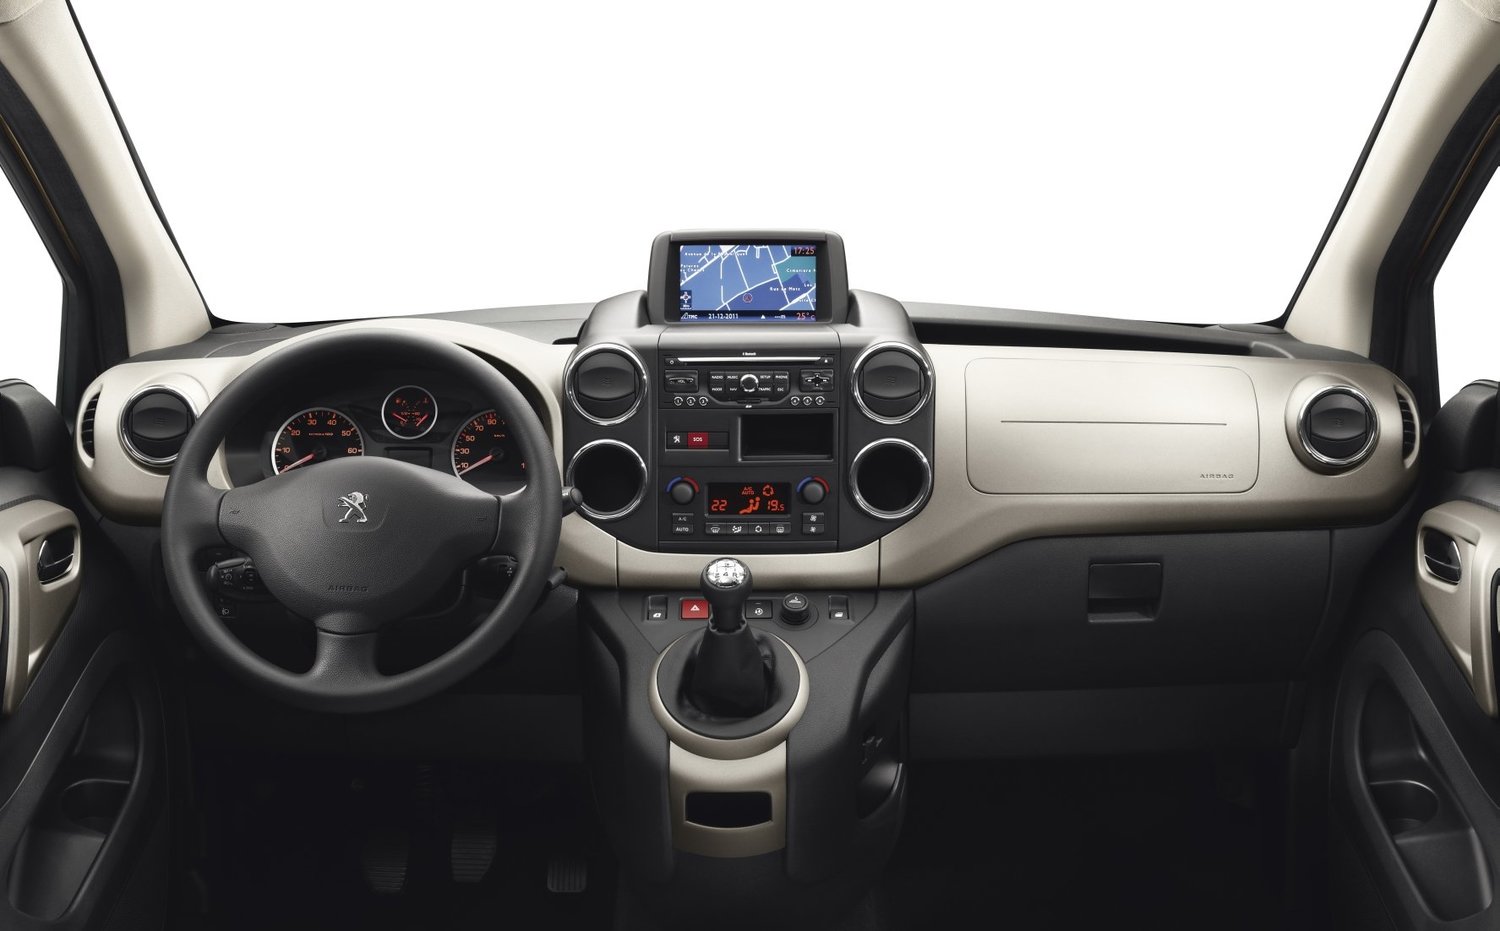 минивэн Tepee Peugeot Partner 2012 - 2015г выпуска модификация 1.6 MT (115 л.с.)